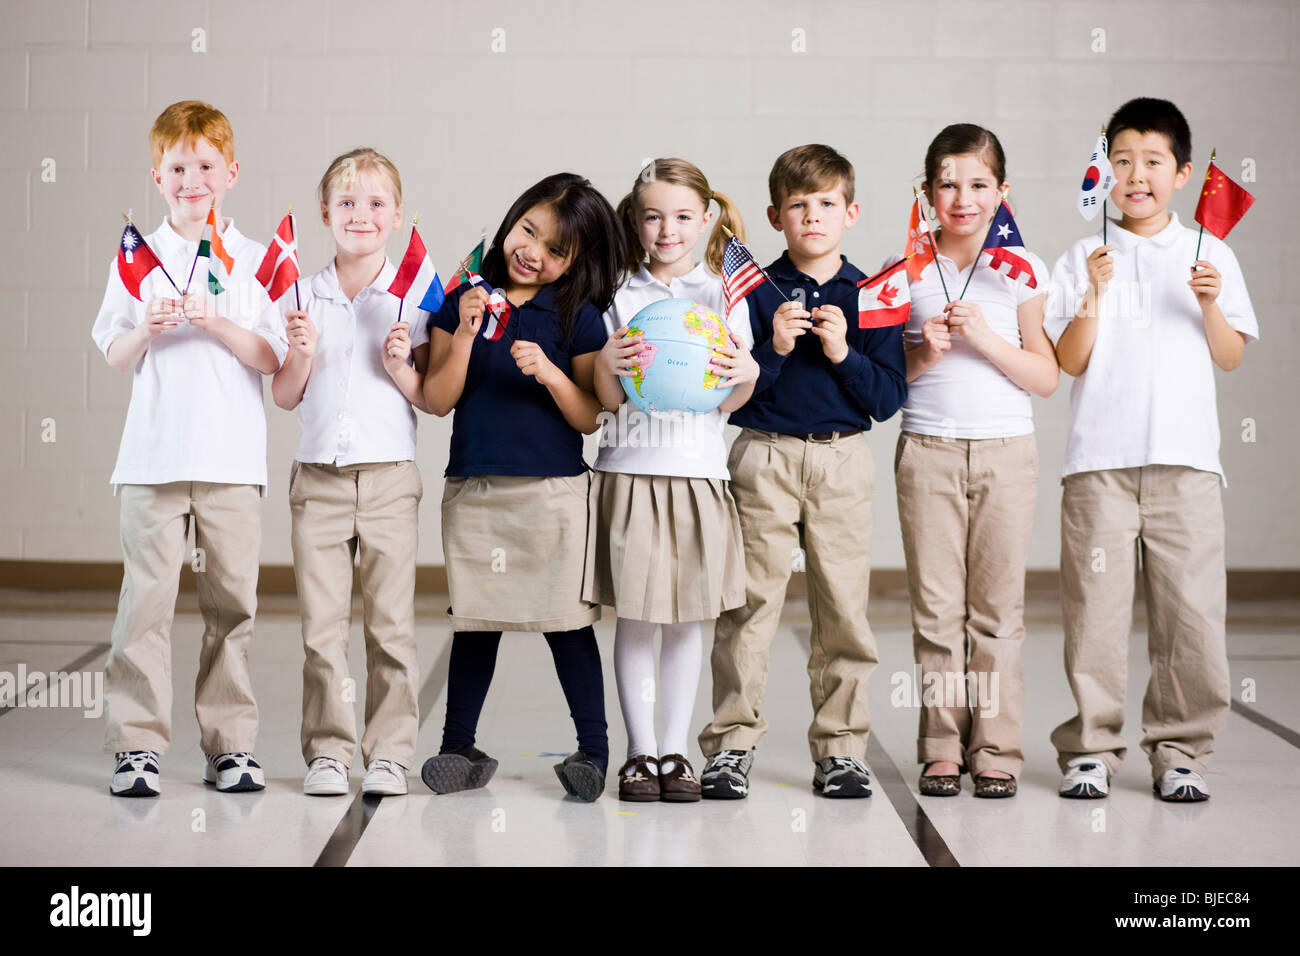 Les enfants de l'école brandissant des drapeaux de différents pays Banque D'Images